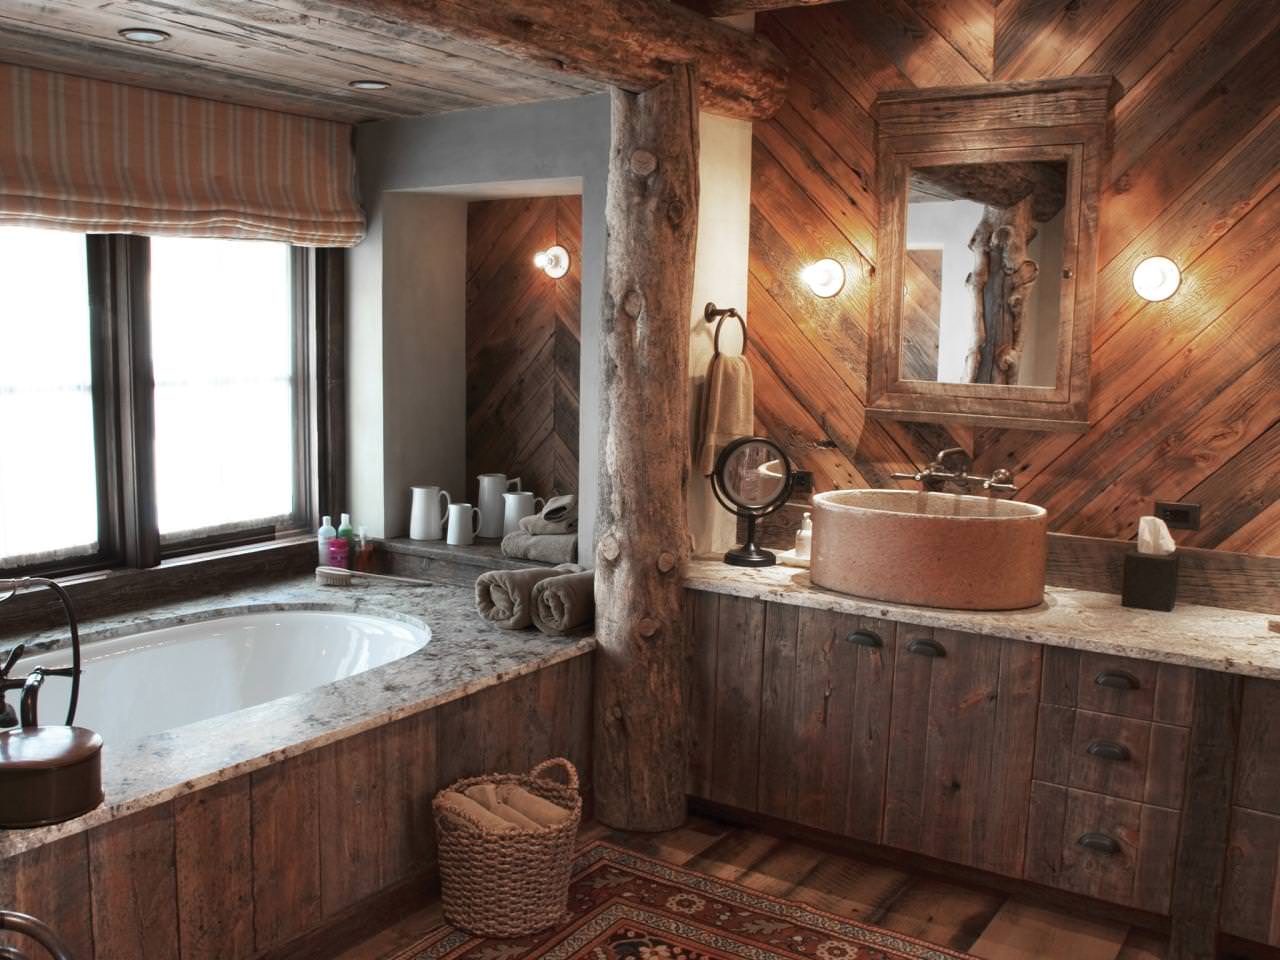 Badezimmer in einem Holzhaus: Foto des Inneren eines schönen Finishs in einem Haus aus einer Bar